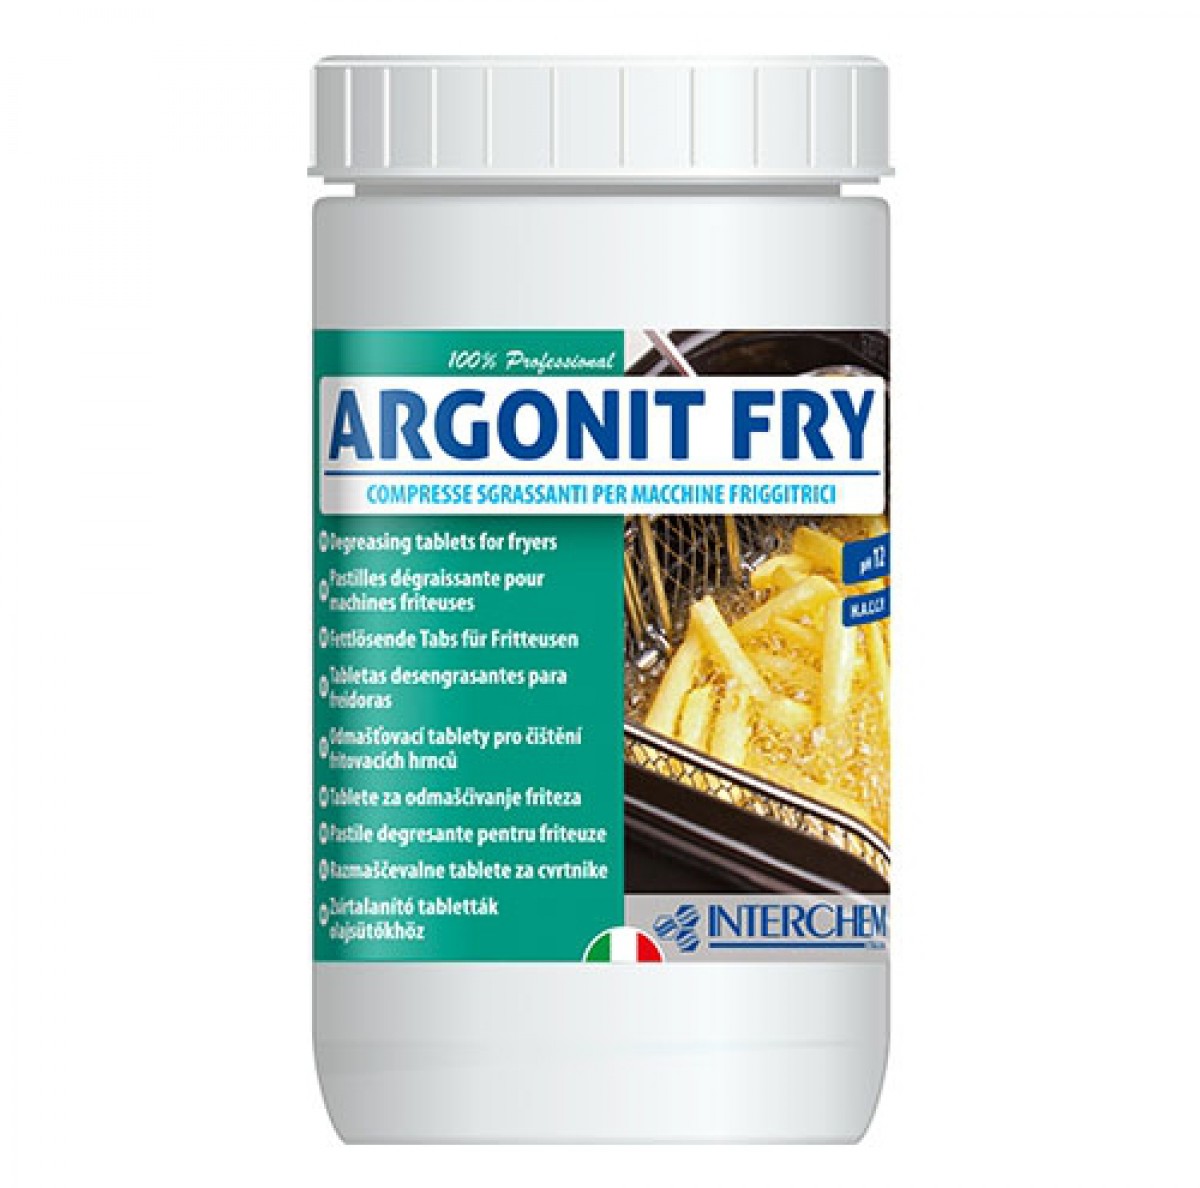 ARGONIT FRY - 900g (25 tableta) / Brzo djelujuće tablete za odmašćivanje friteza 